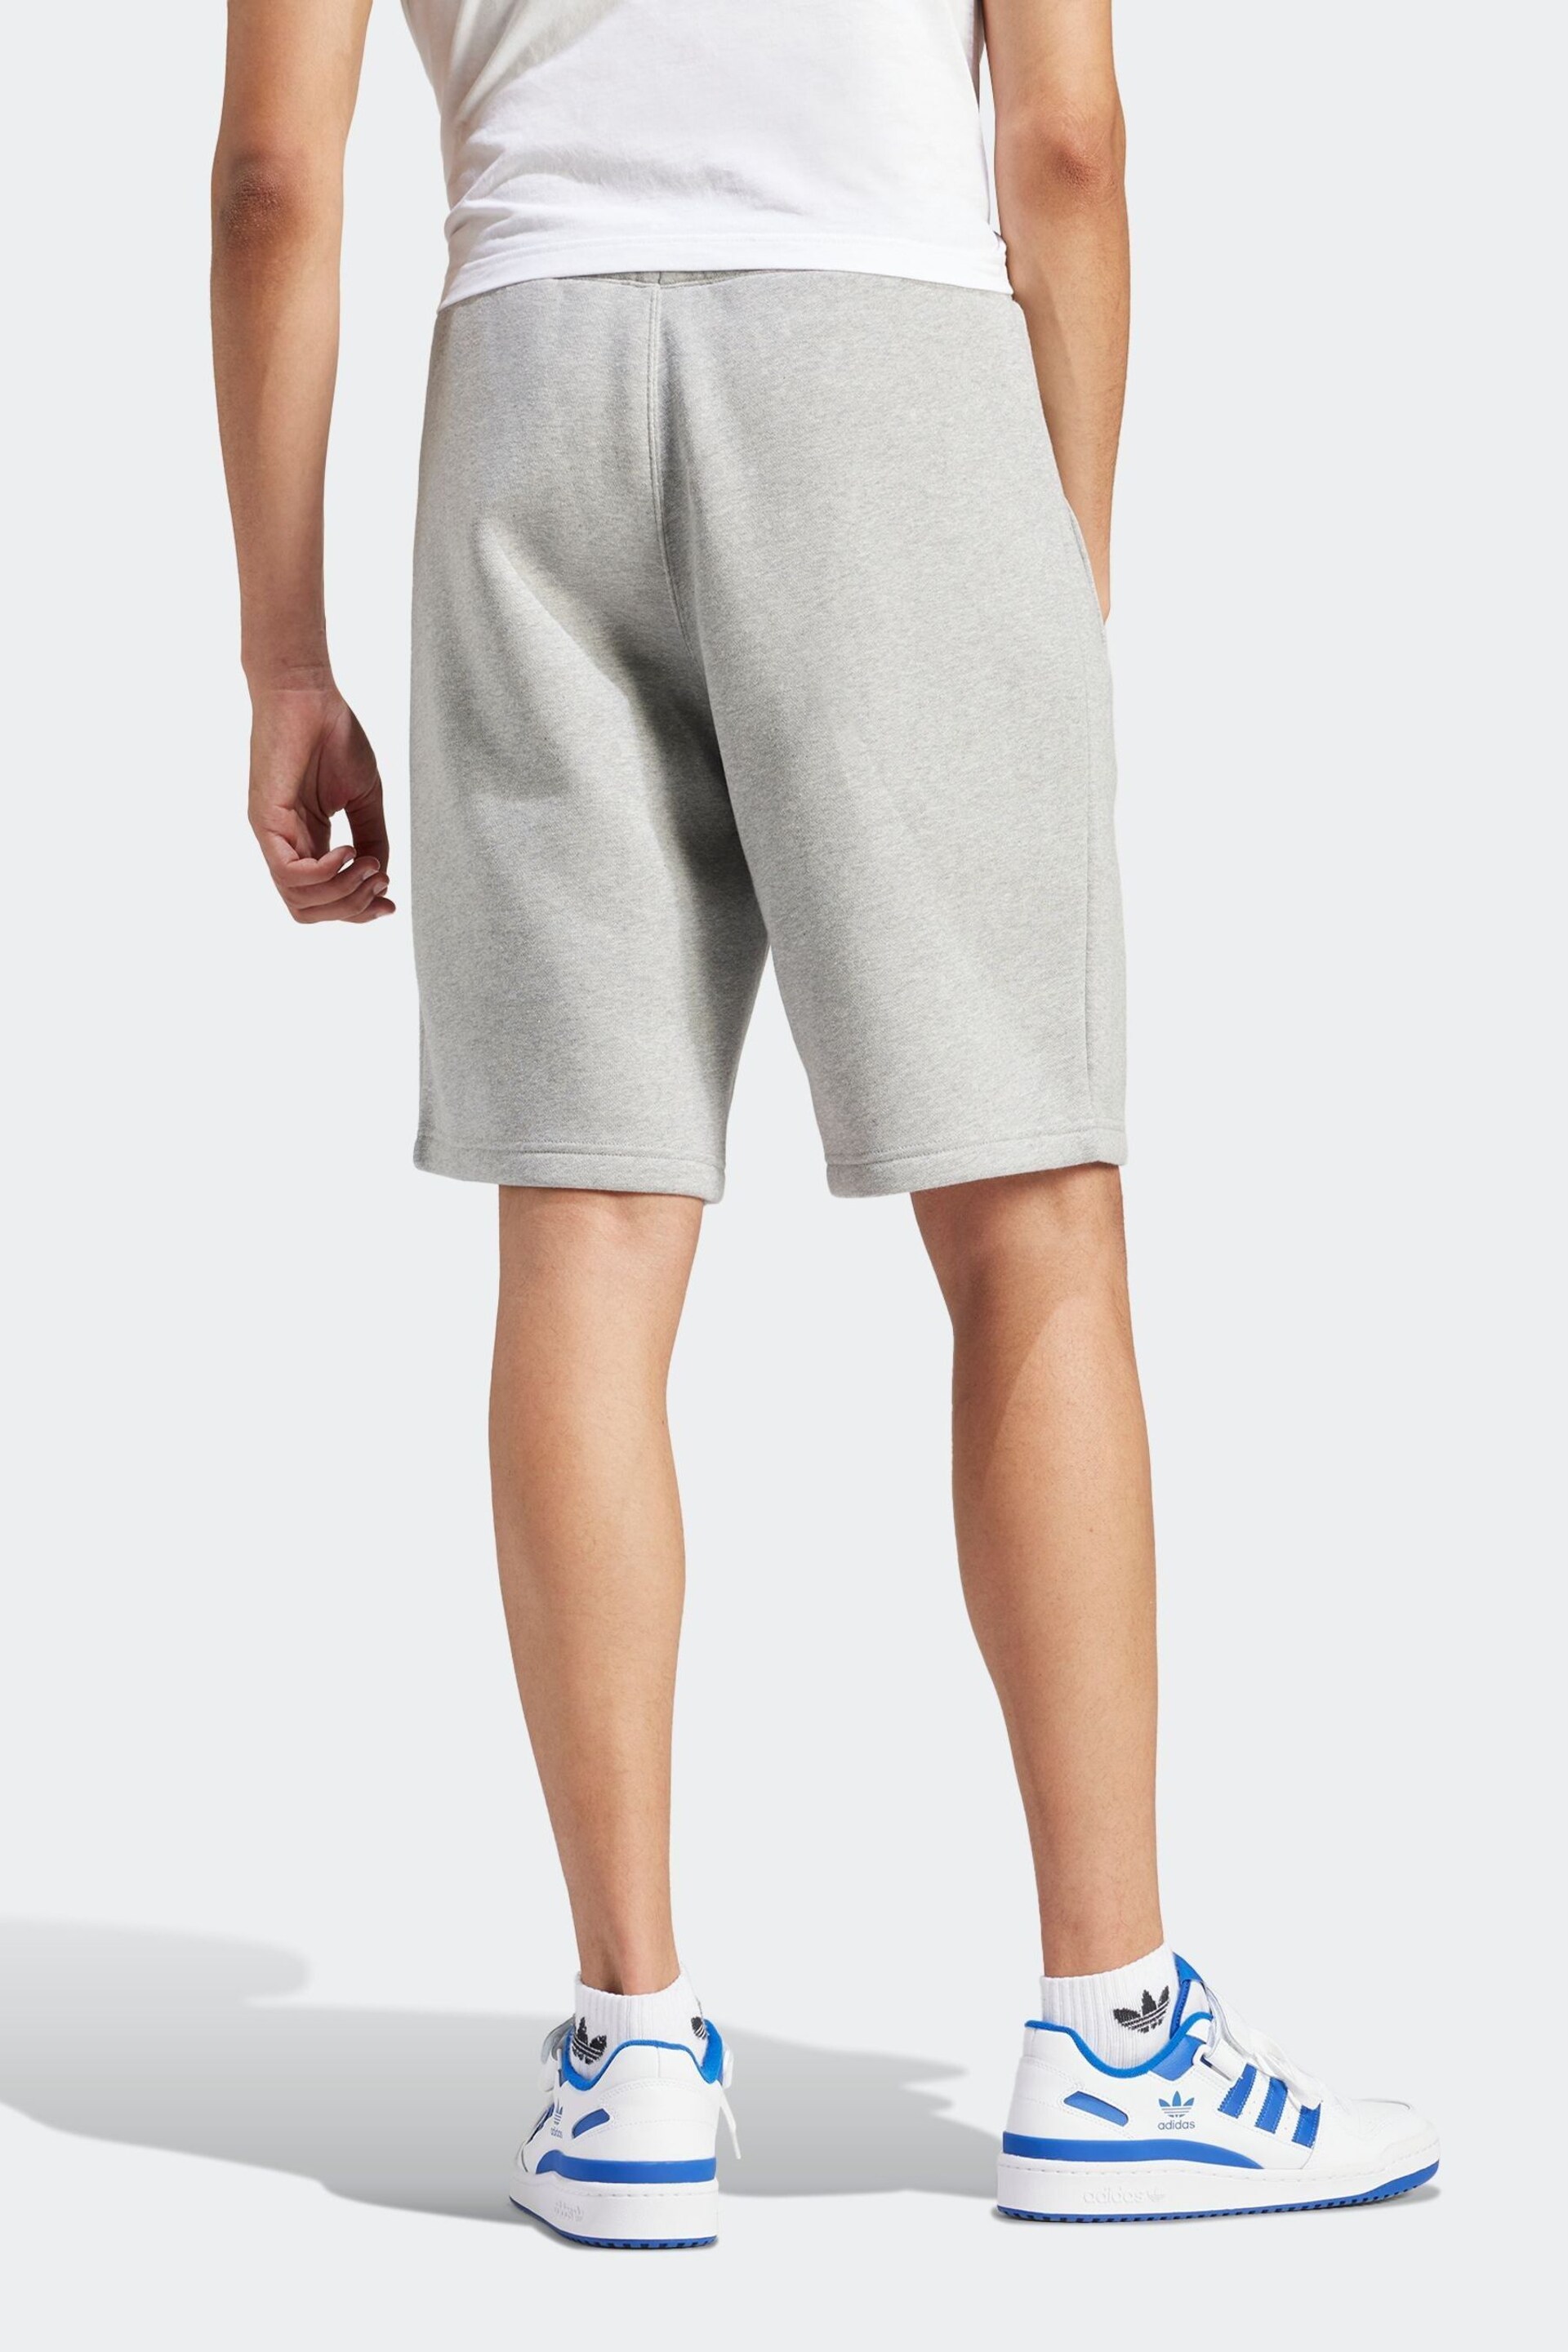 adidas Originals Trefoil Essentials Shorts - Image 2 of 6